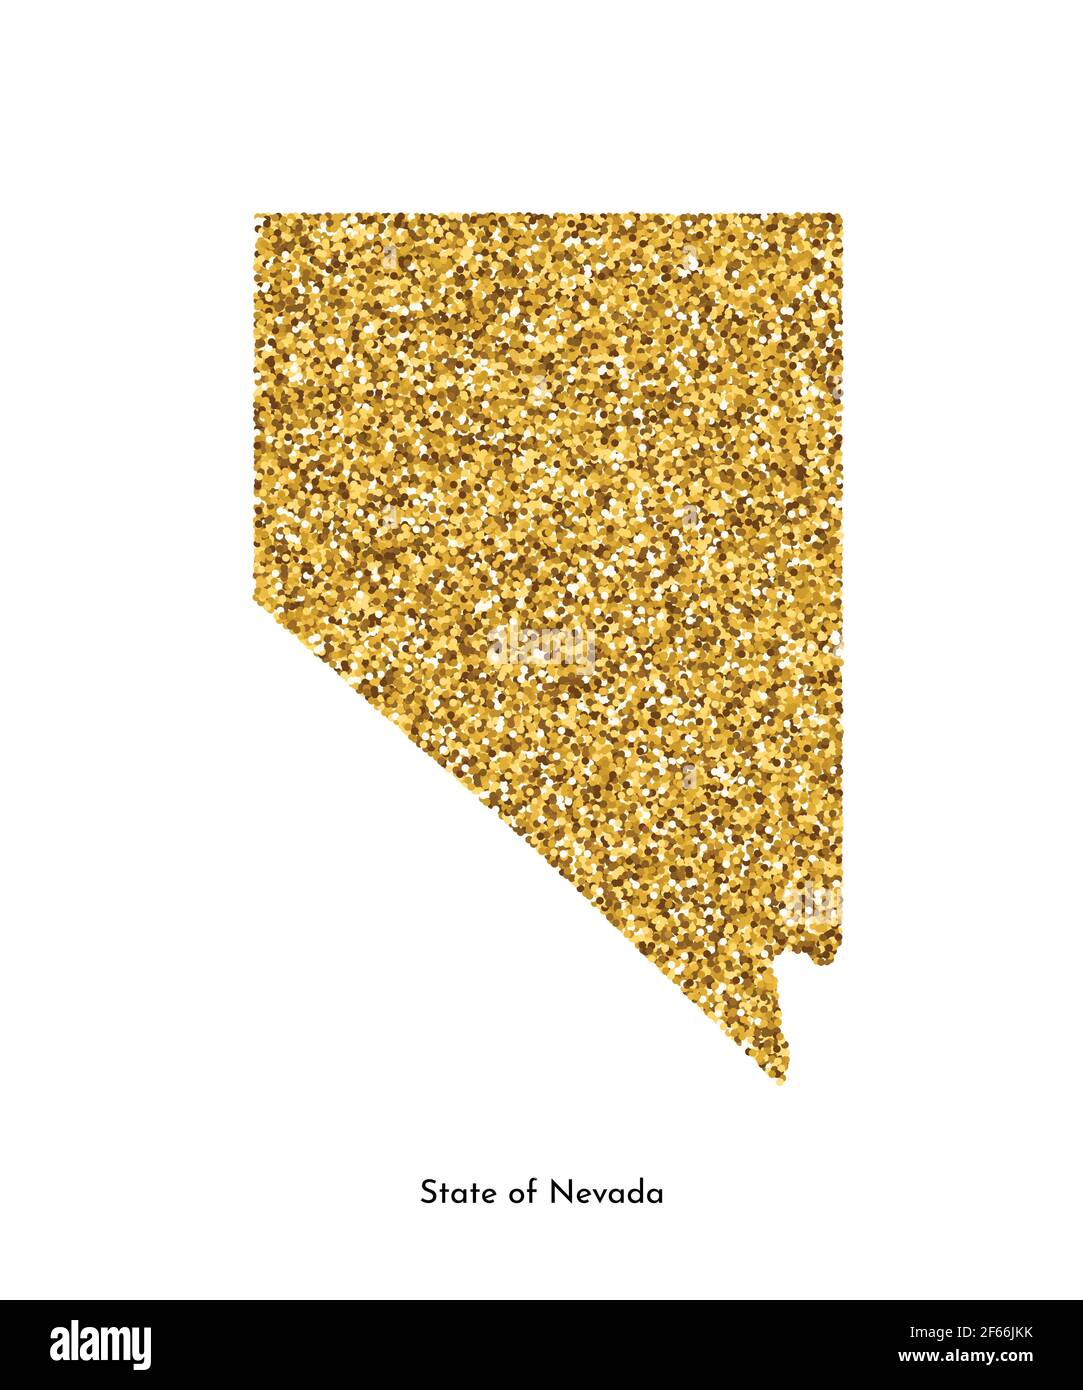 Illustrazione vettoriale isolata con mappa semplificata dello Stato del Nevada (USA). Luccicante texture dorata con glitter. Modello di decorazione. Illustrazione Vettoriale